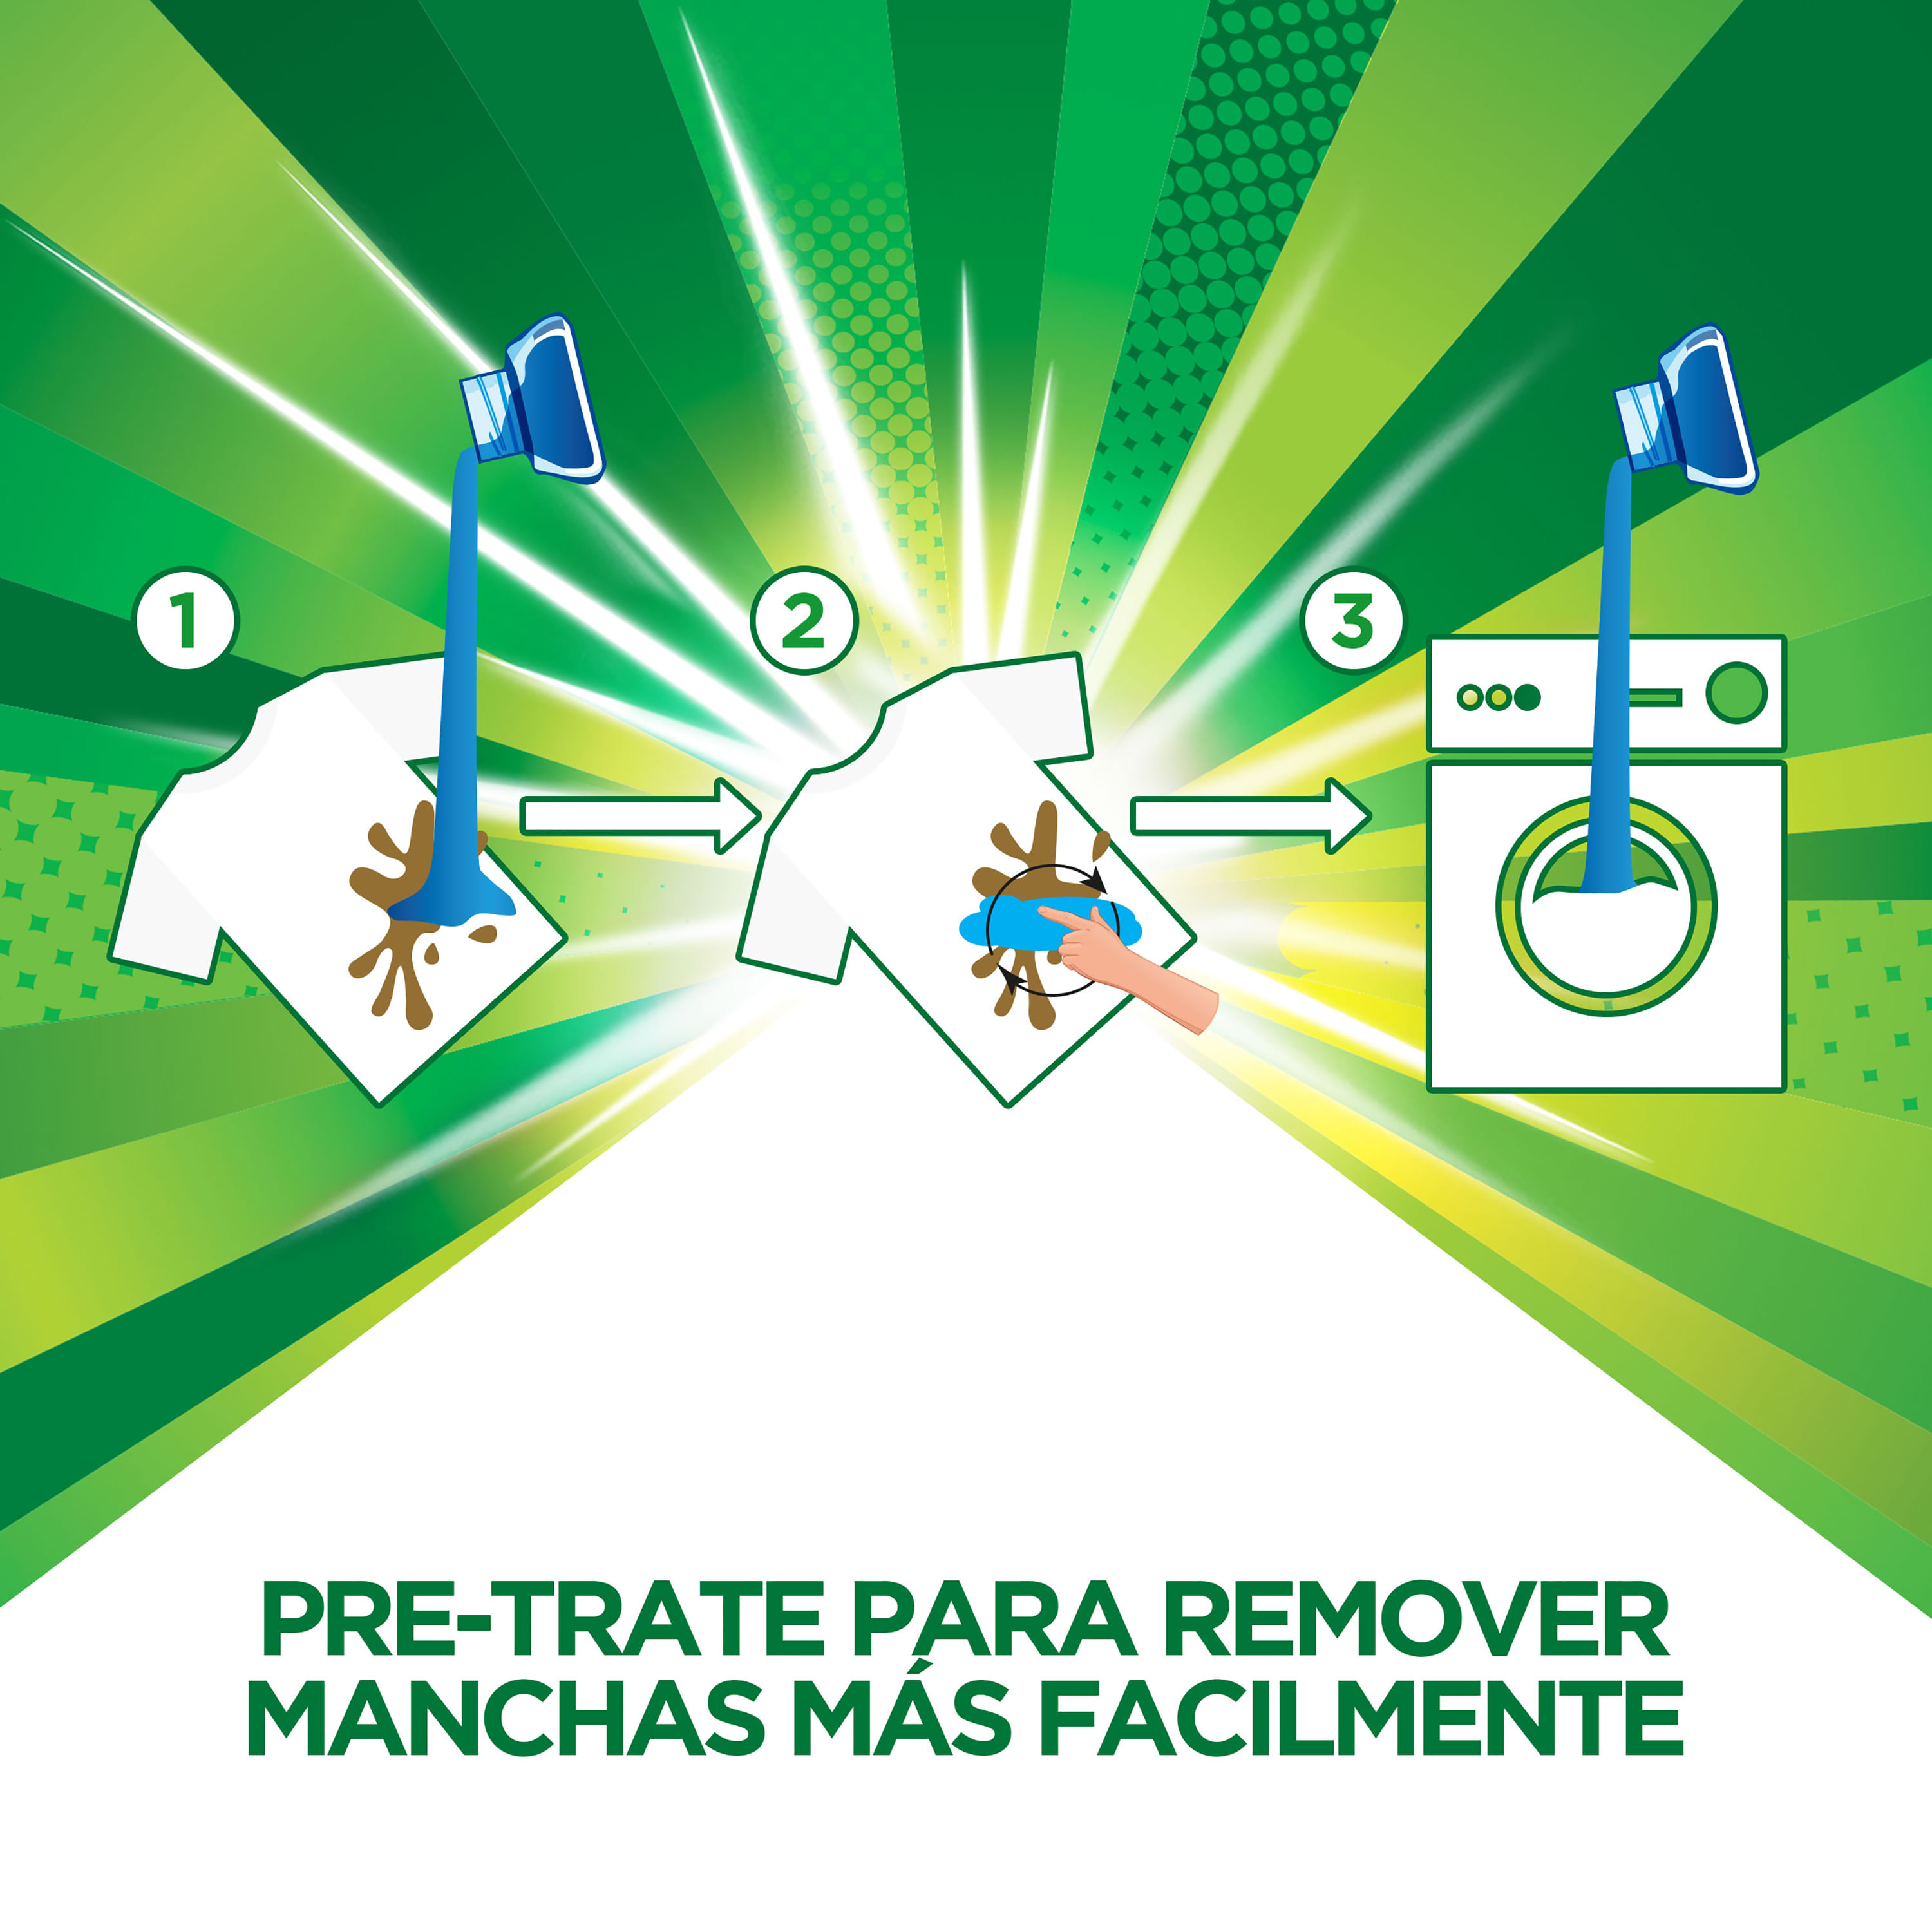 Comprar Detergente Líquido Concentrado Ariel Doble Poder Para Lavar Ropa  Blanca Y De Color 2.84 L, Walmart Costa Rica - Maxi Palí